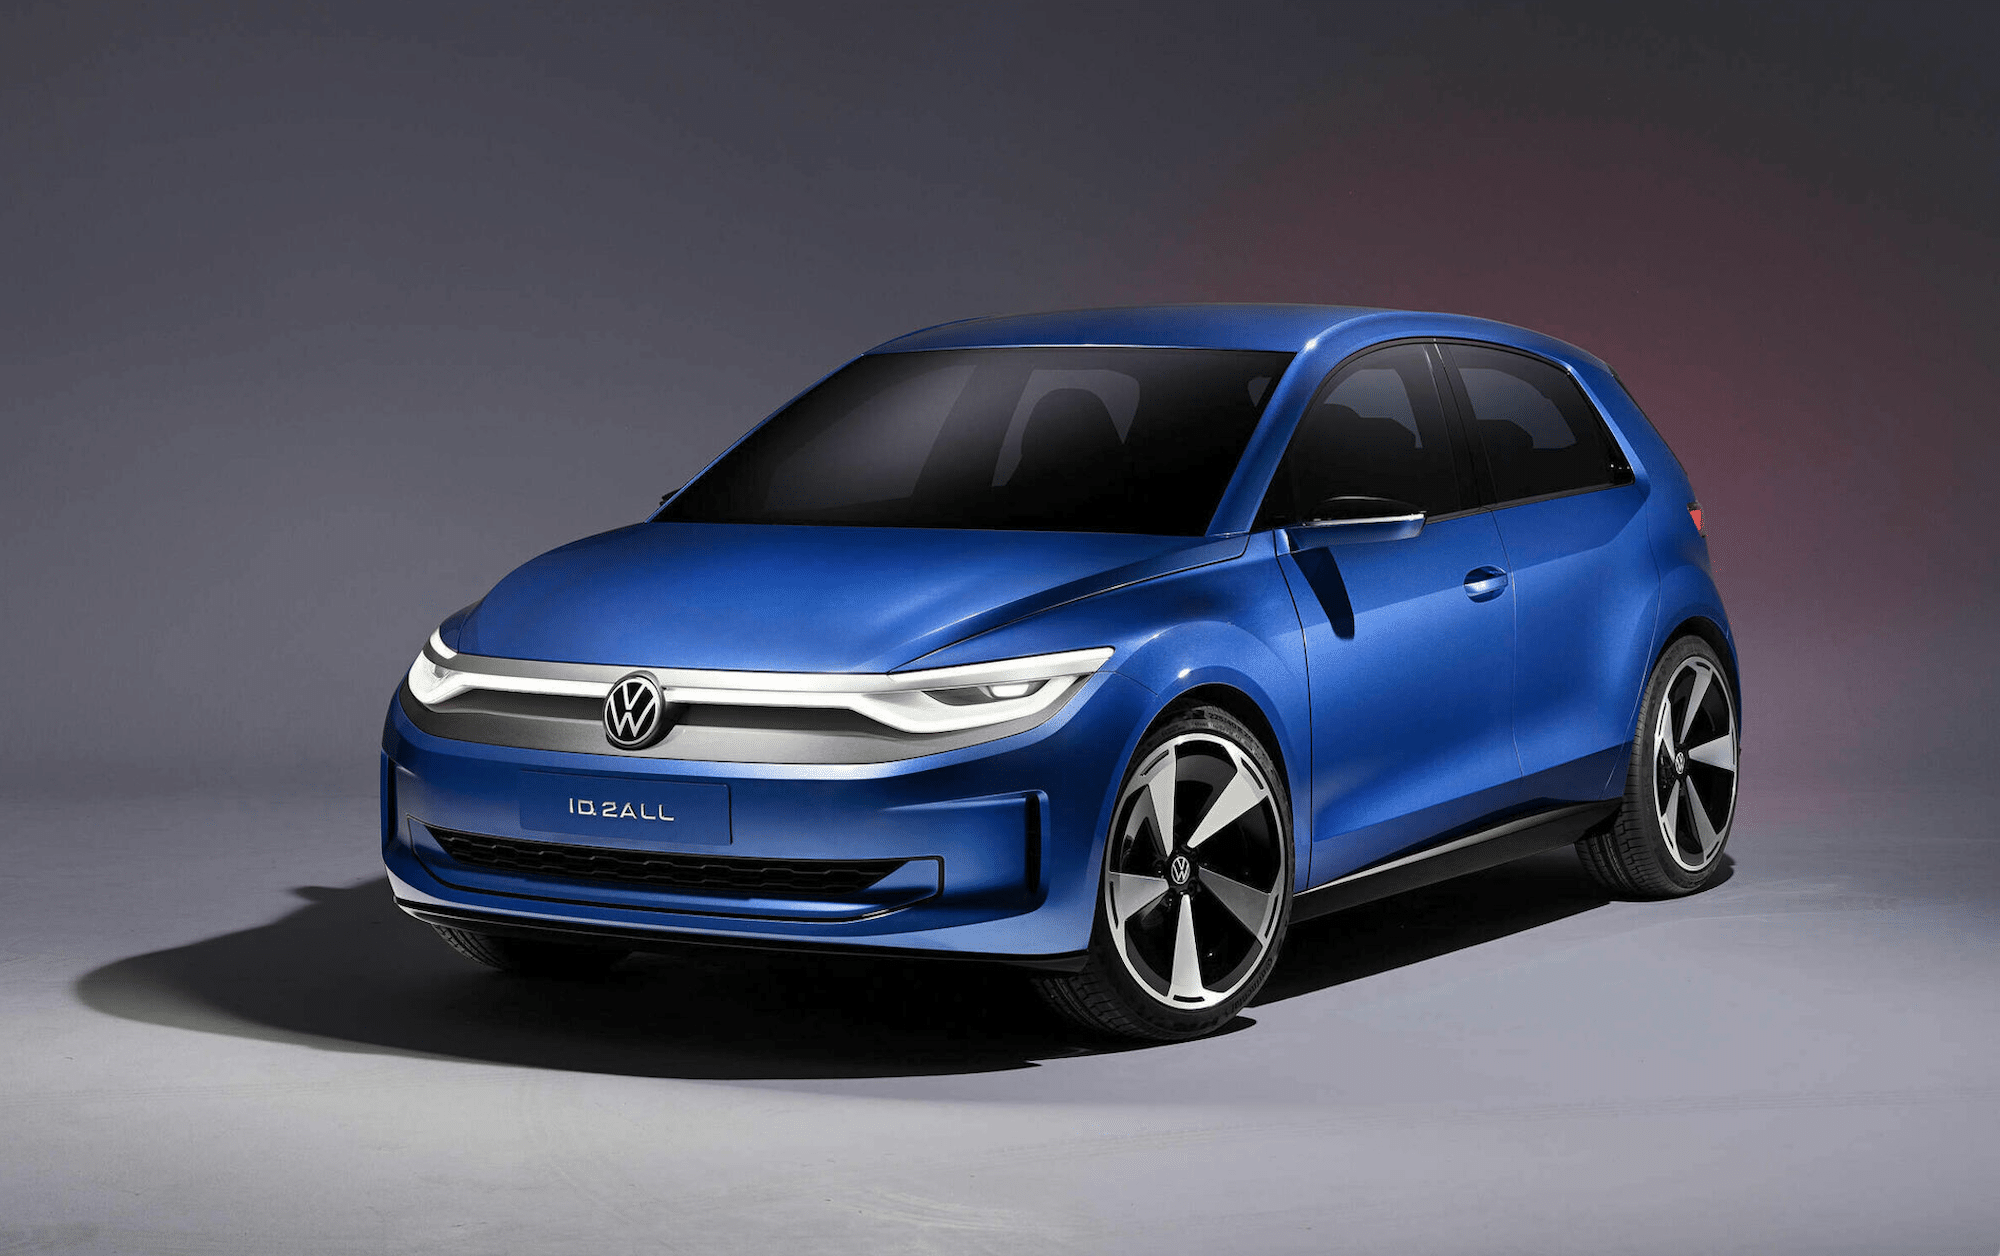 VW prezentuje koncept ID. 2all Elektrické auto pro všechny dorazí